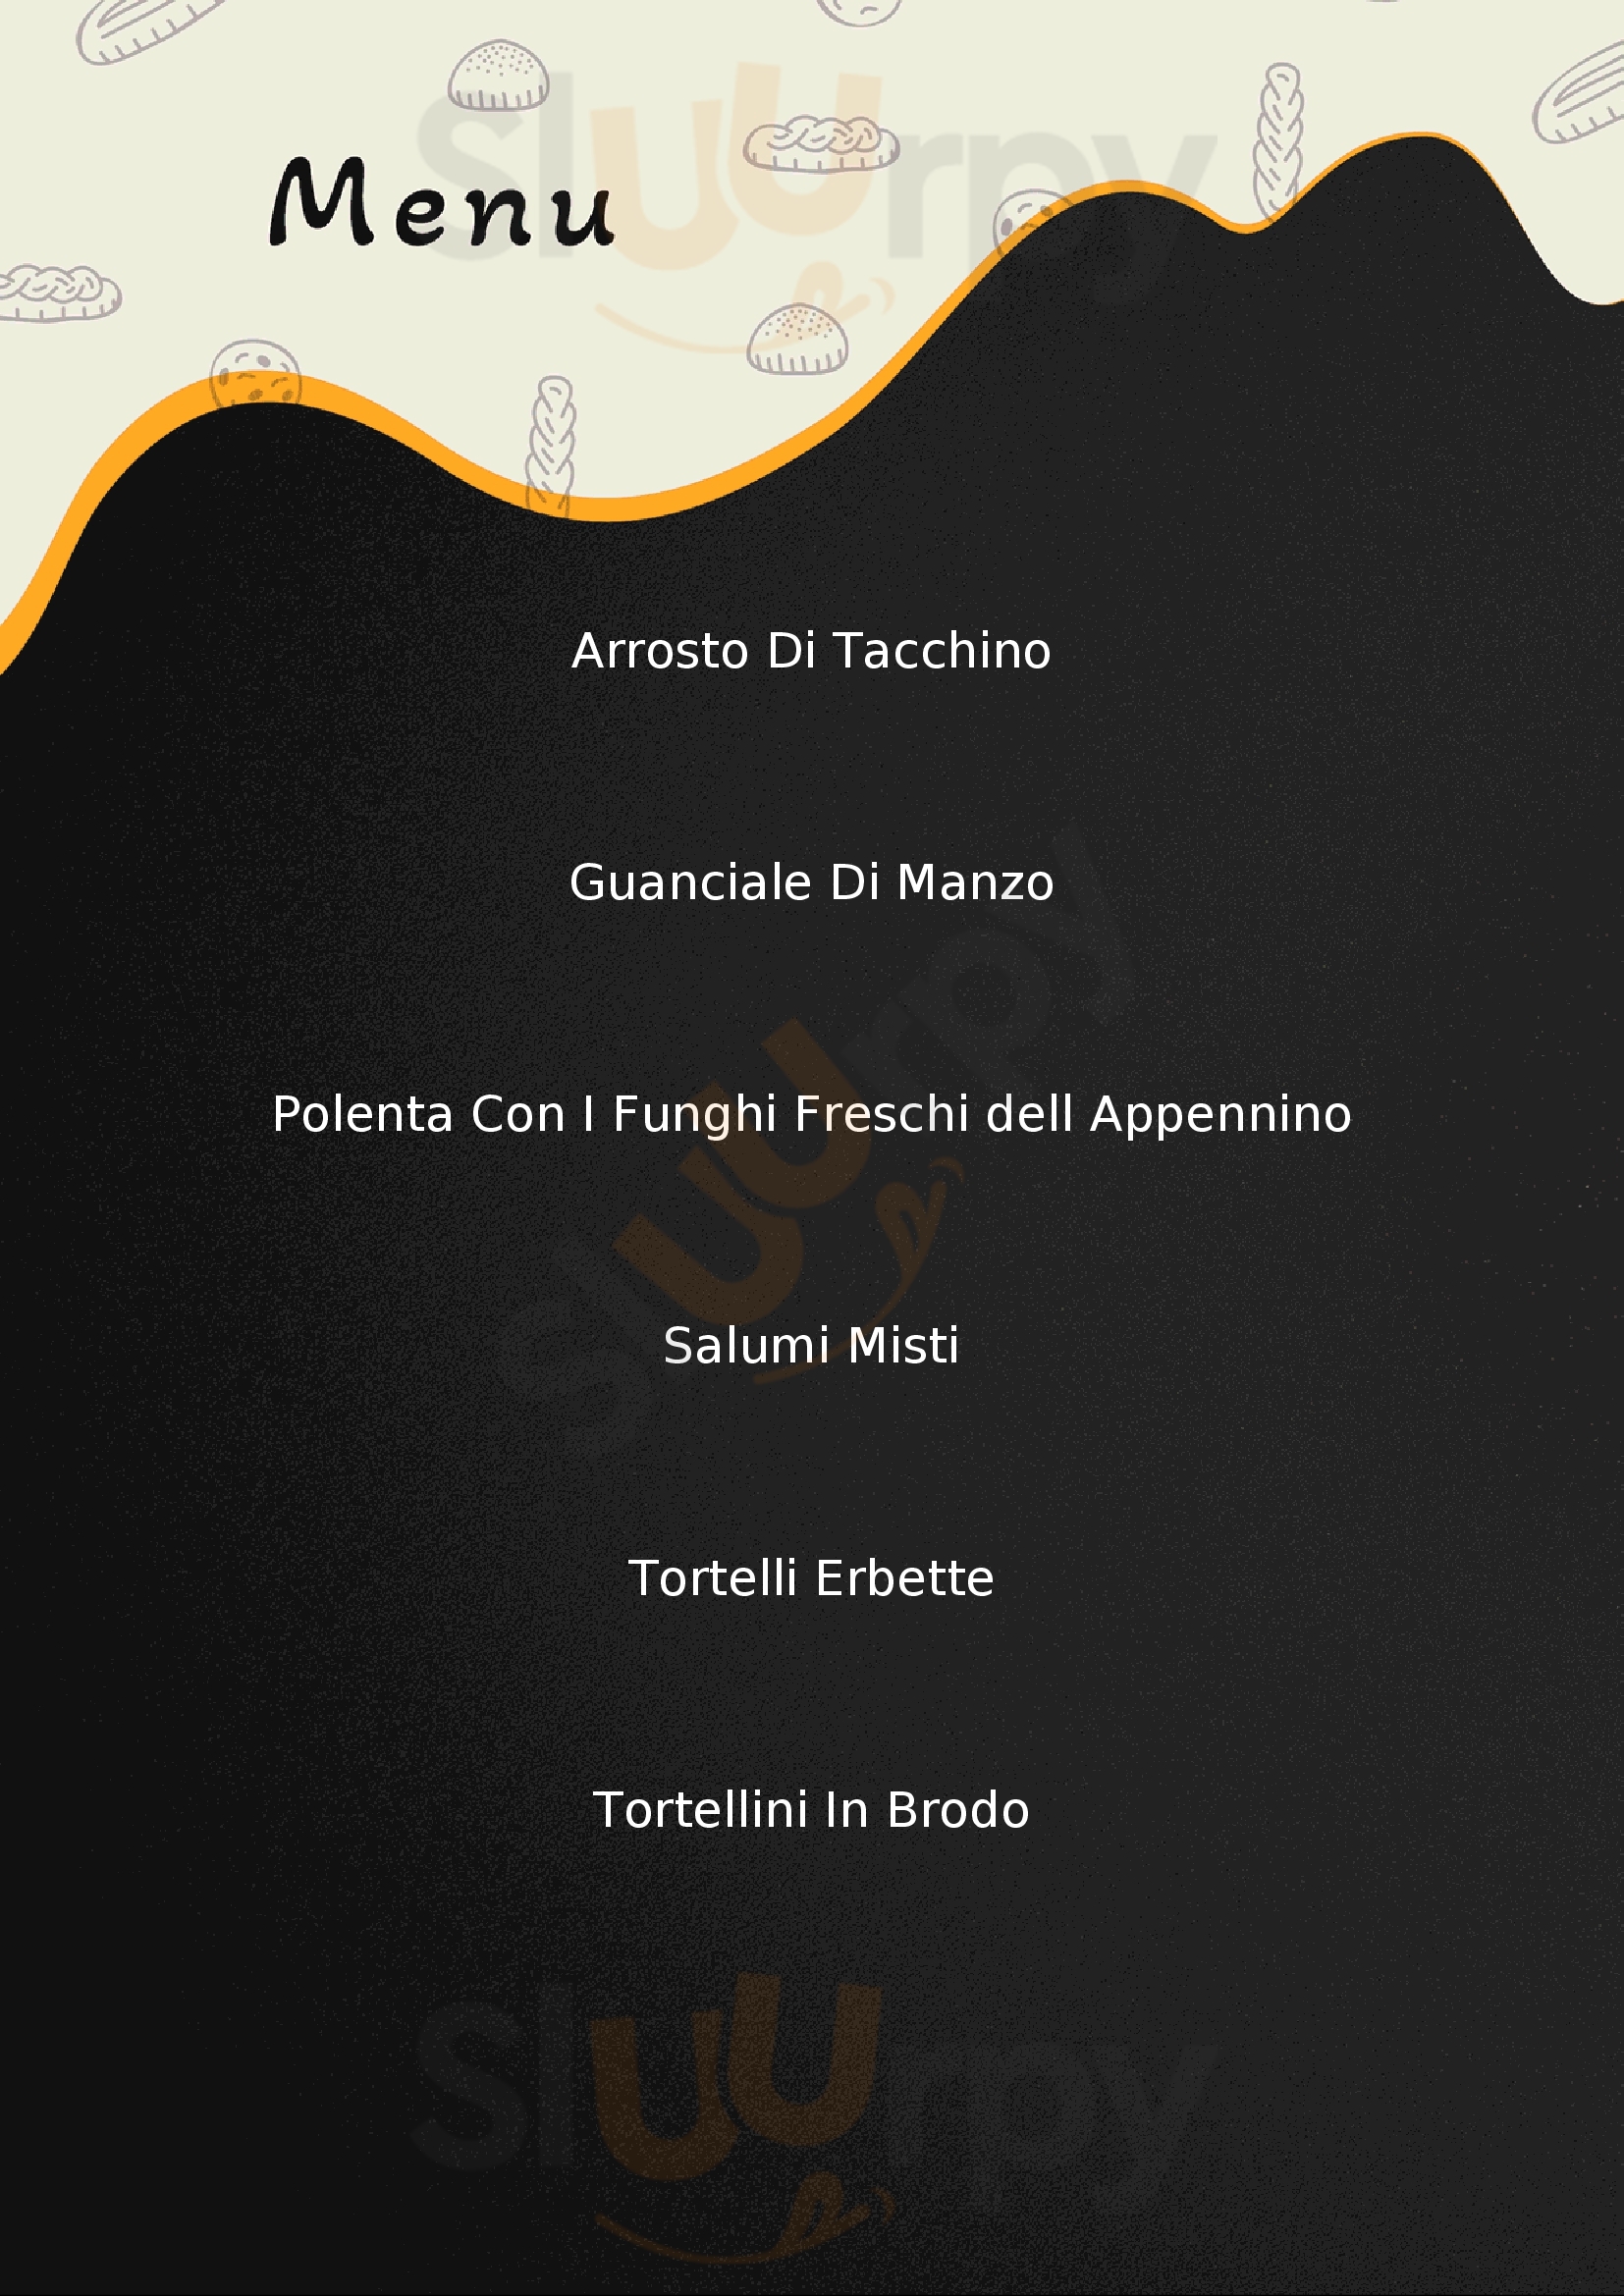 Osteria di Recovato Castelfranco Emilia menù 1 pagina